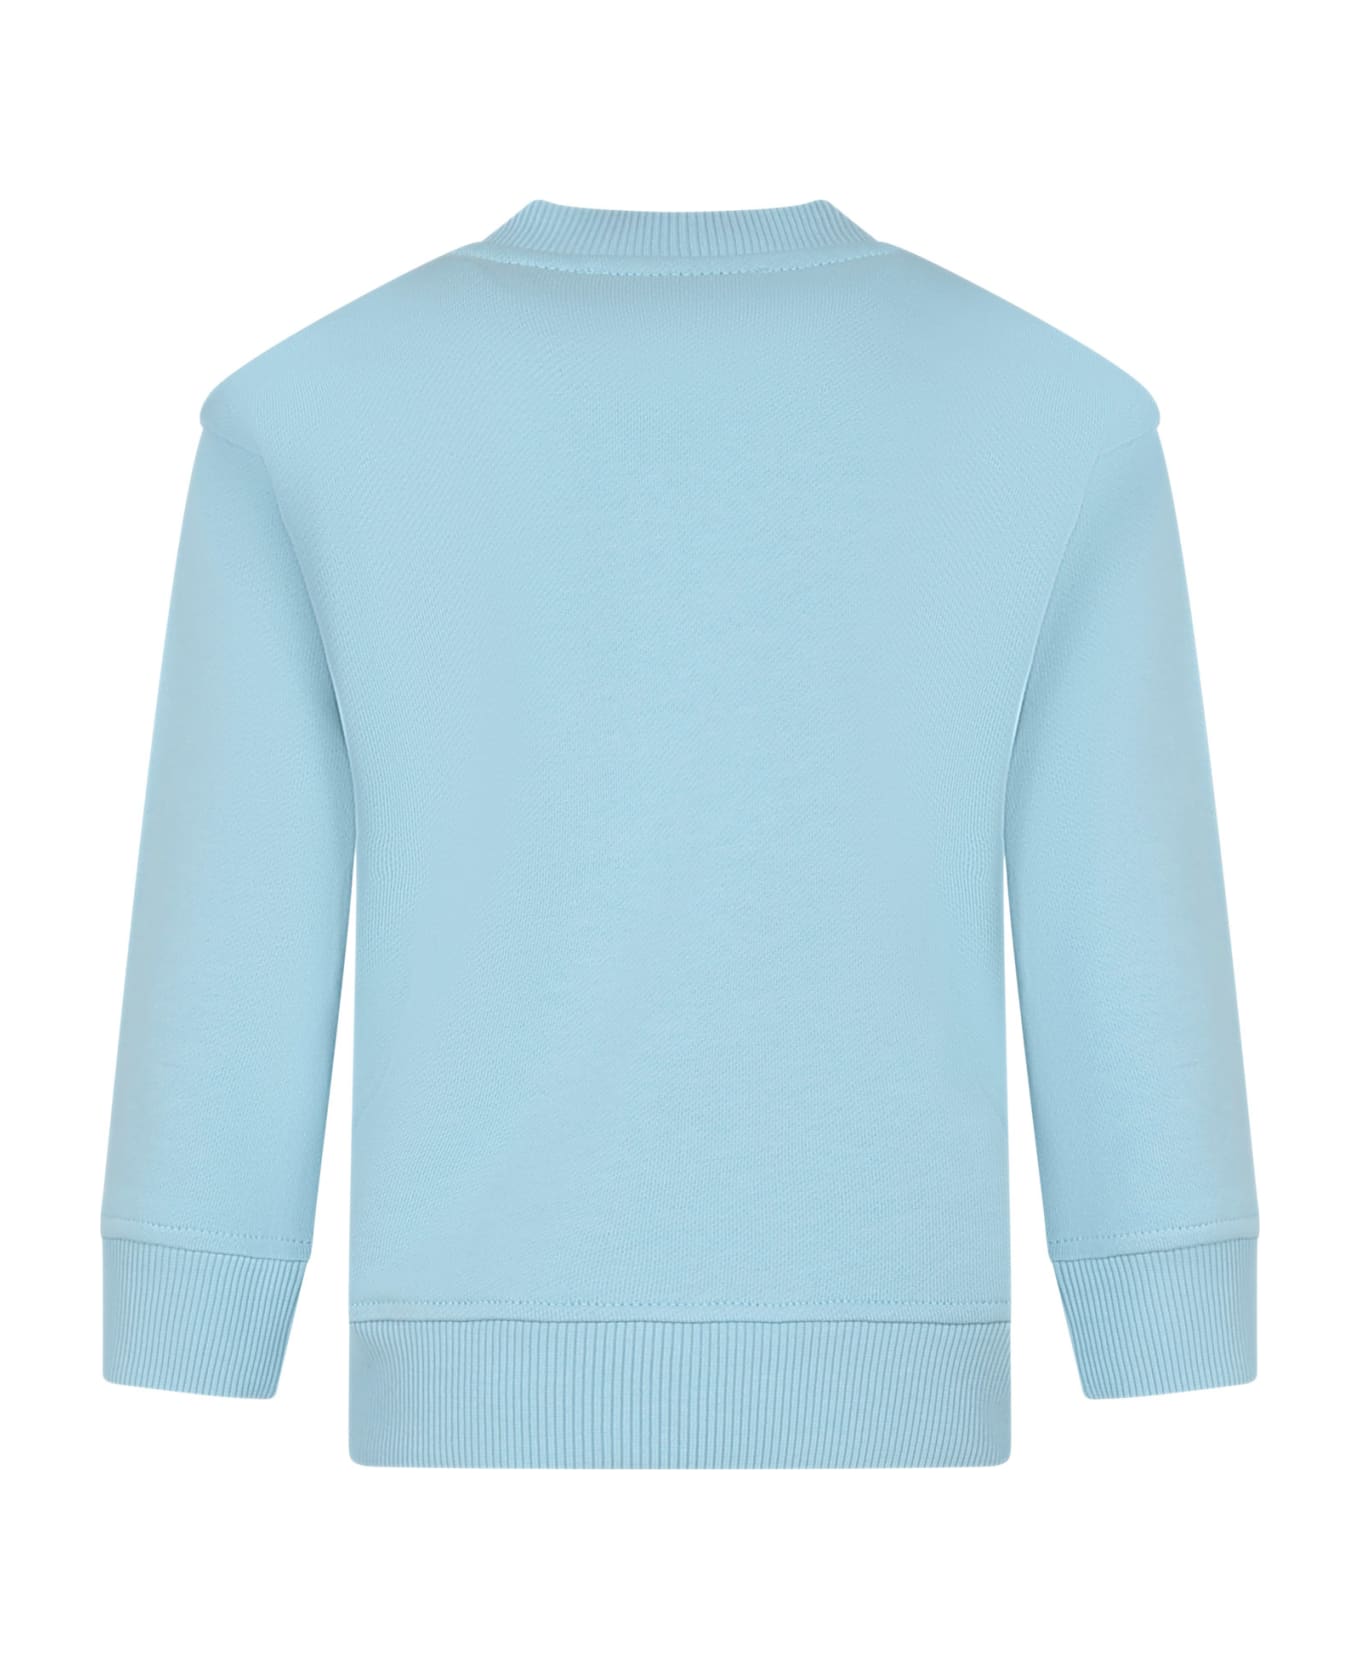 Emporio Armani Sky Blue Sweatshirt For Boy With The Smurfs - Light Blue